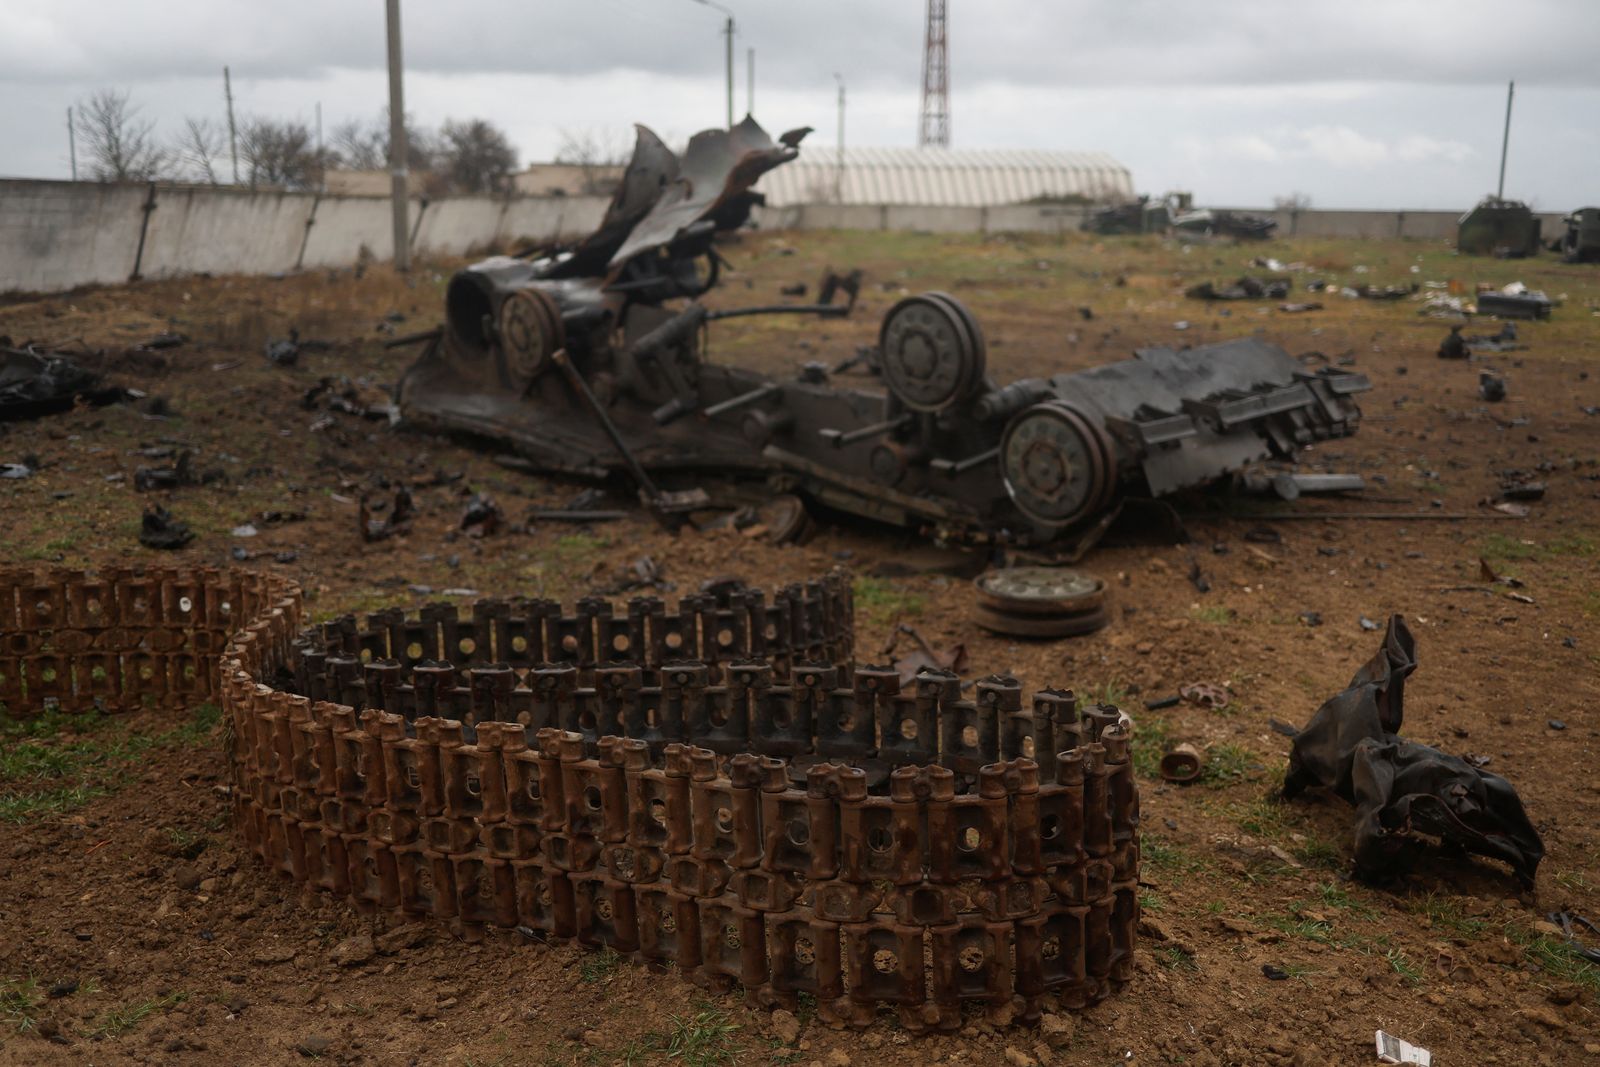 دبابة روسية مدمرة في خيرسون بأوكرانيا، 16 ديسمبر 2022 - REUTERS